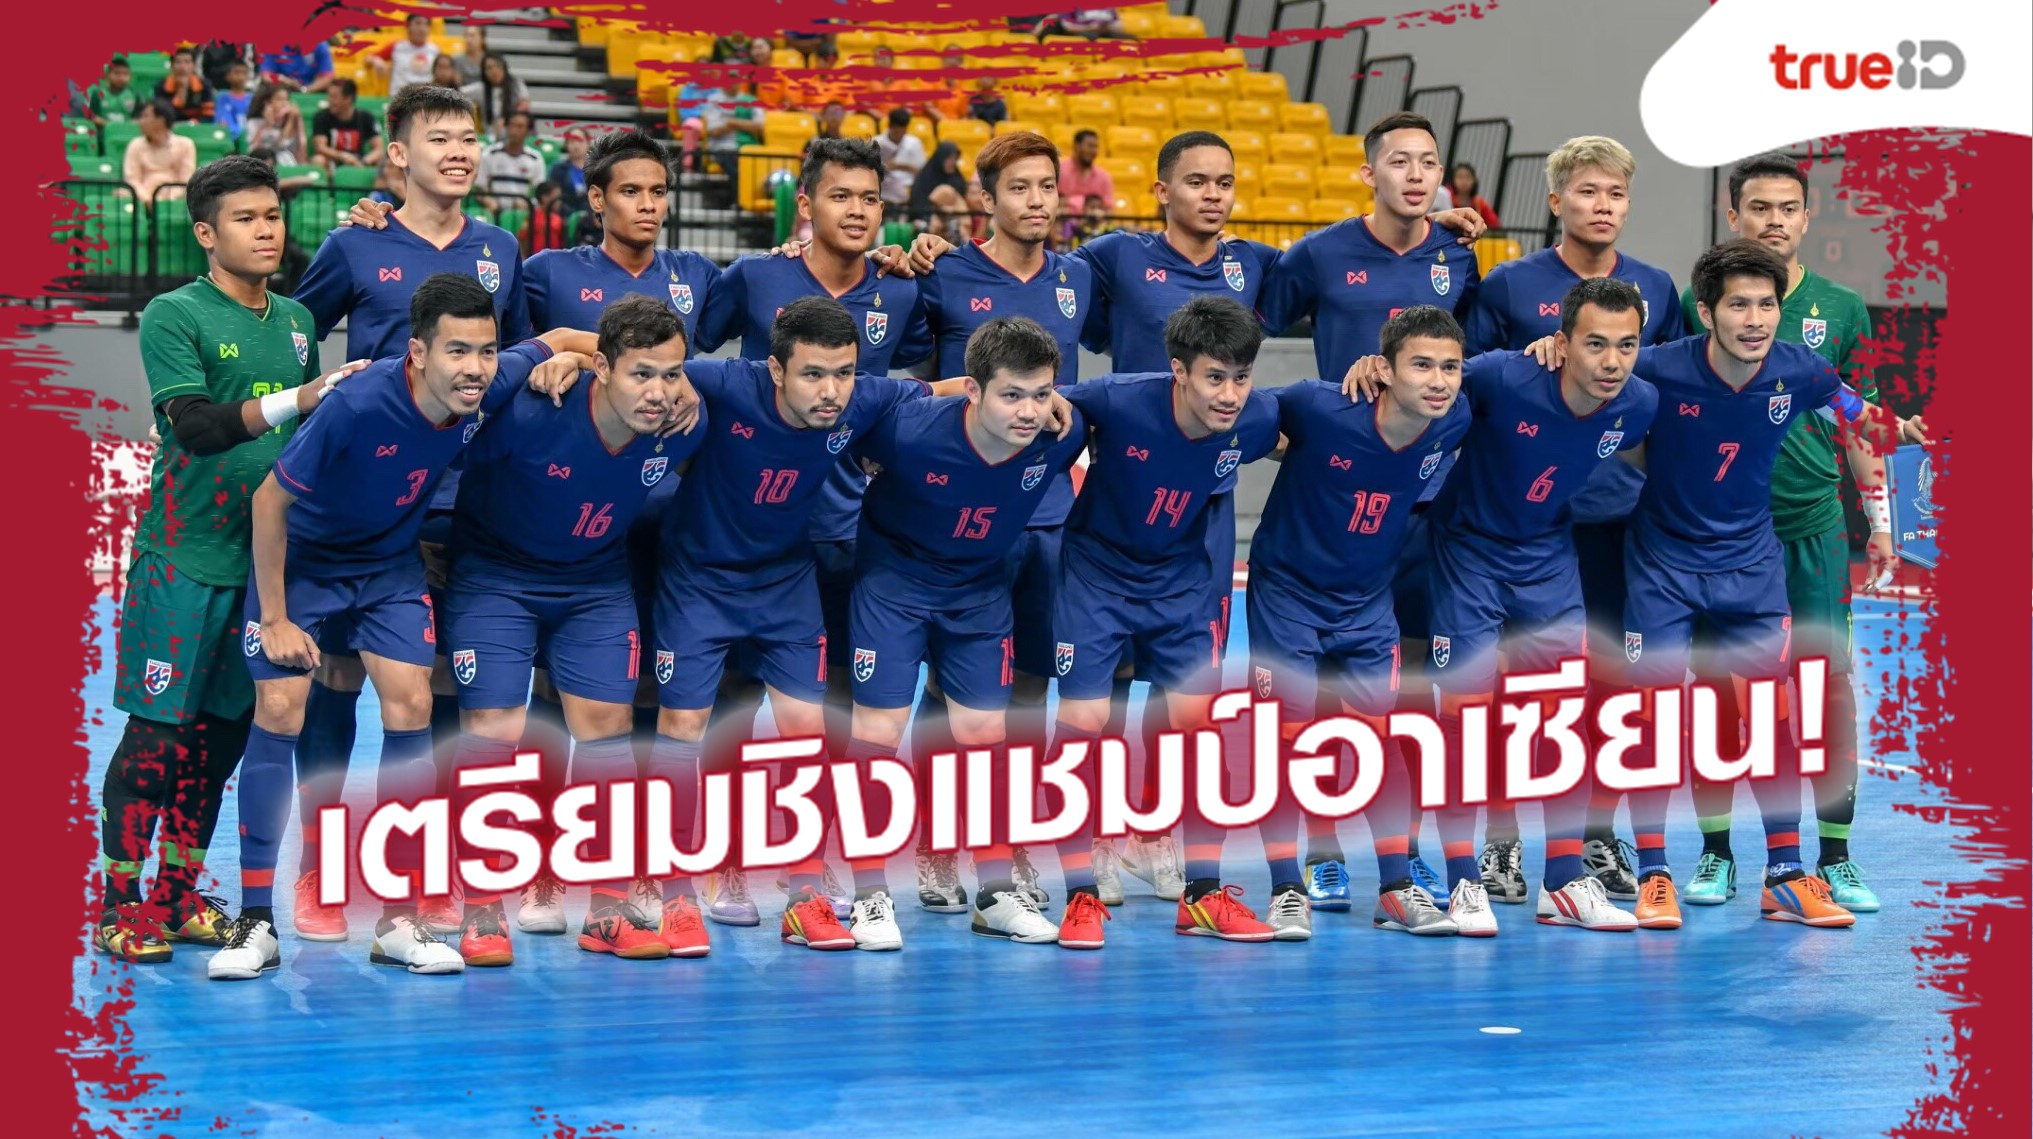 “กัปตันช้าง”นำทัพ! ฟุตซอลทีมชาติไทยเปิดโผ 17 แข้งเตรียมทีมลุยศึกชิงแชมป์อาเซียน